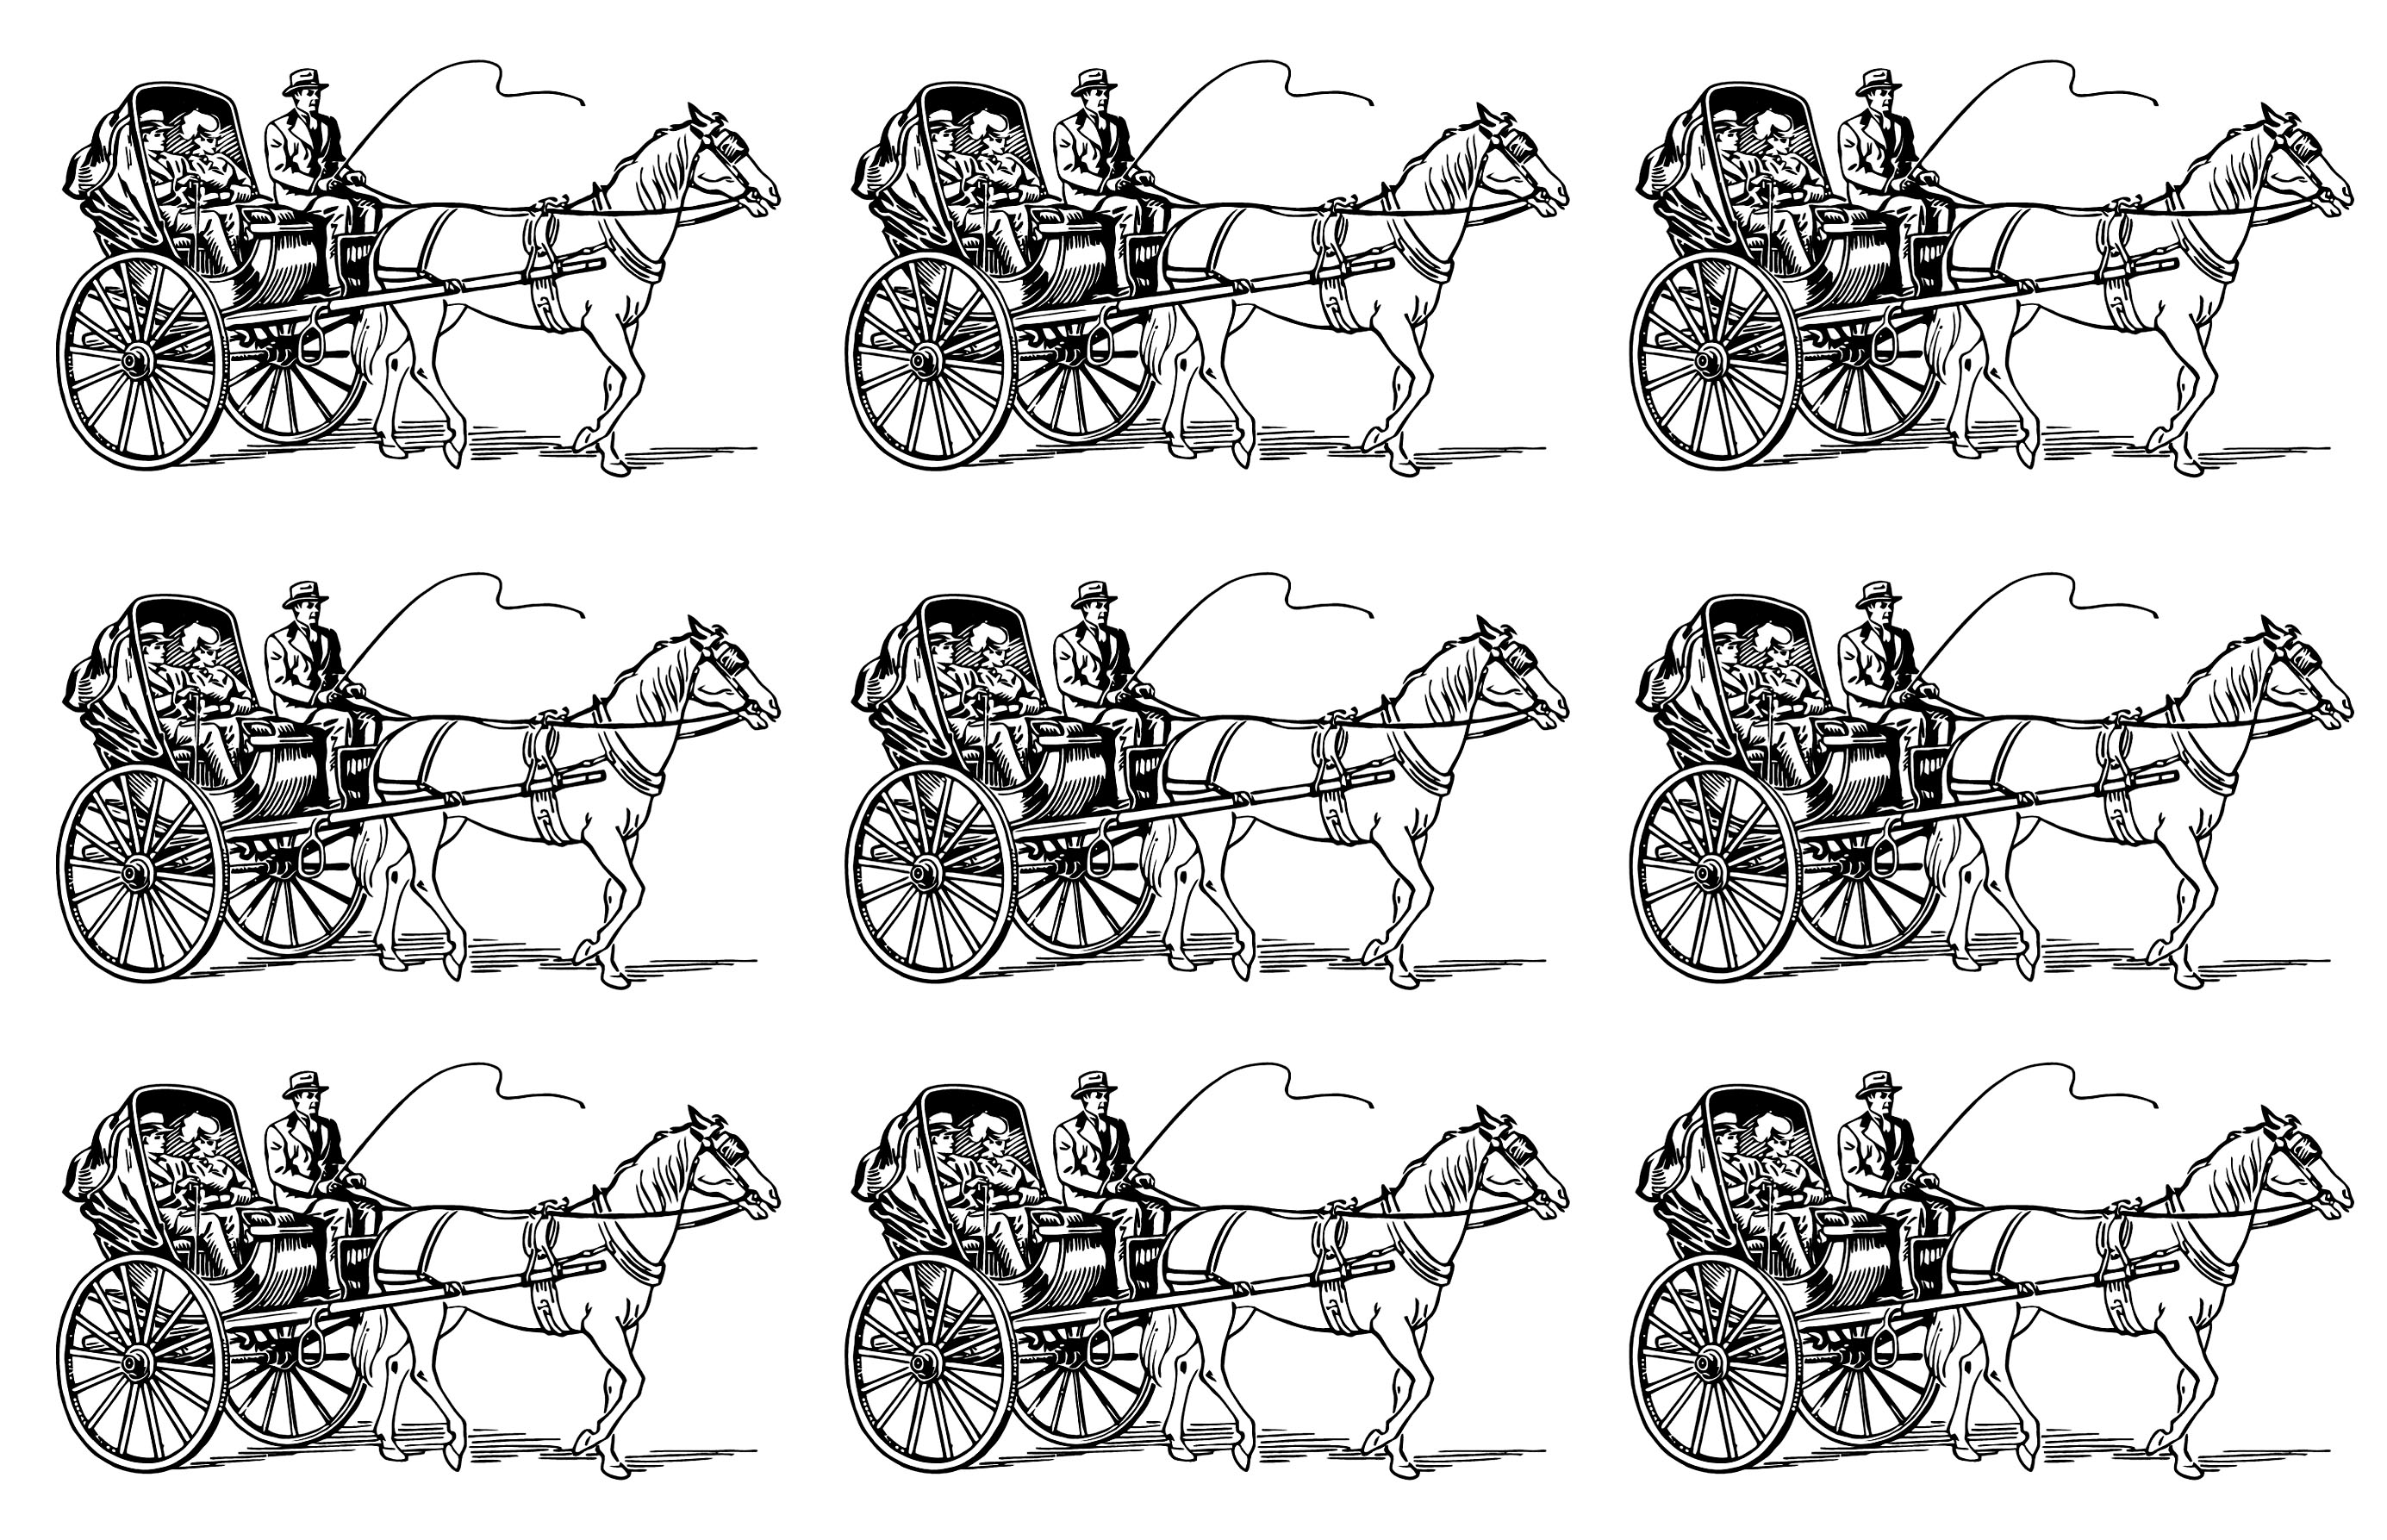 Sehr vintage Mosaik Bild eines Pferdewagens, der einen Mann und eine Frau trägt. Male diesen Wagen auf 6 verschiedene Arten an!